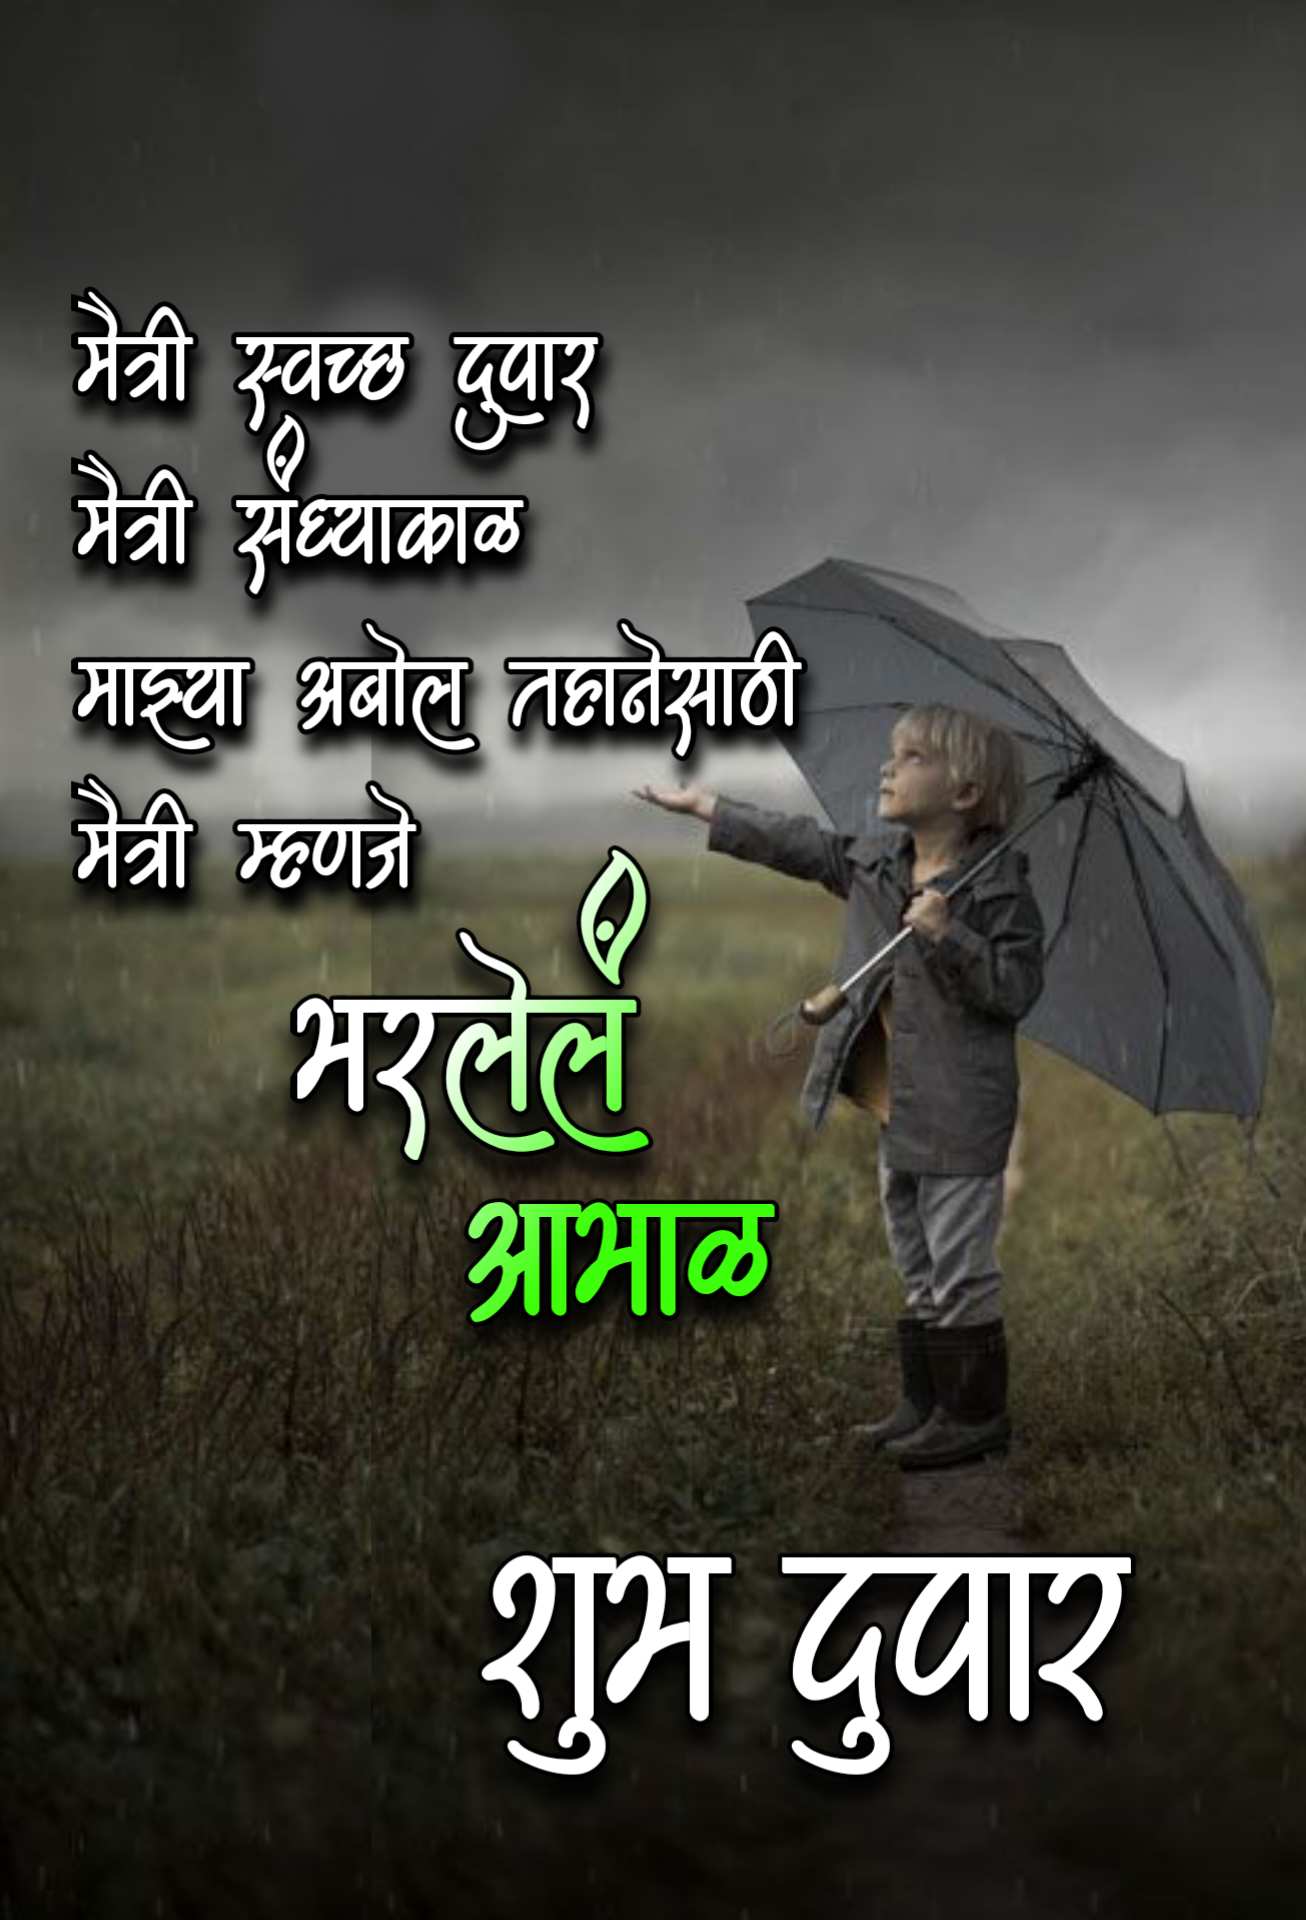 Shubh Dupar Marathi Message